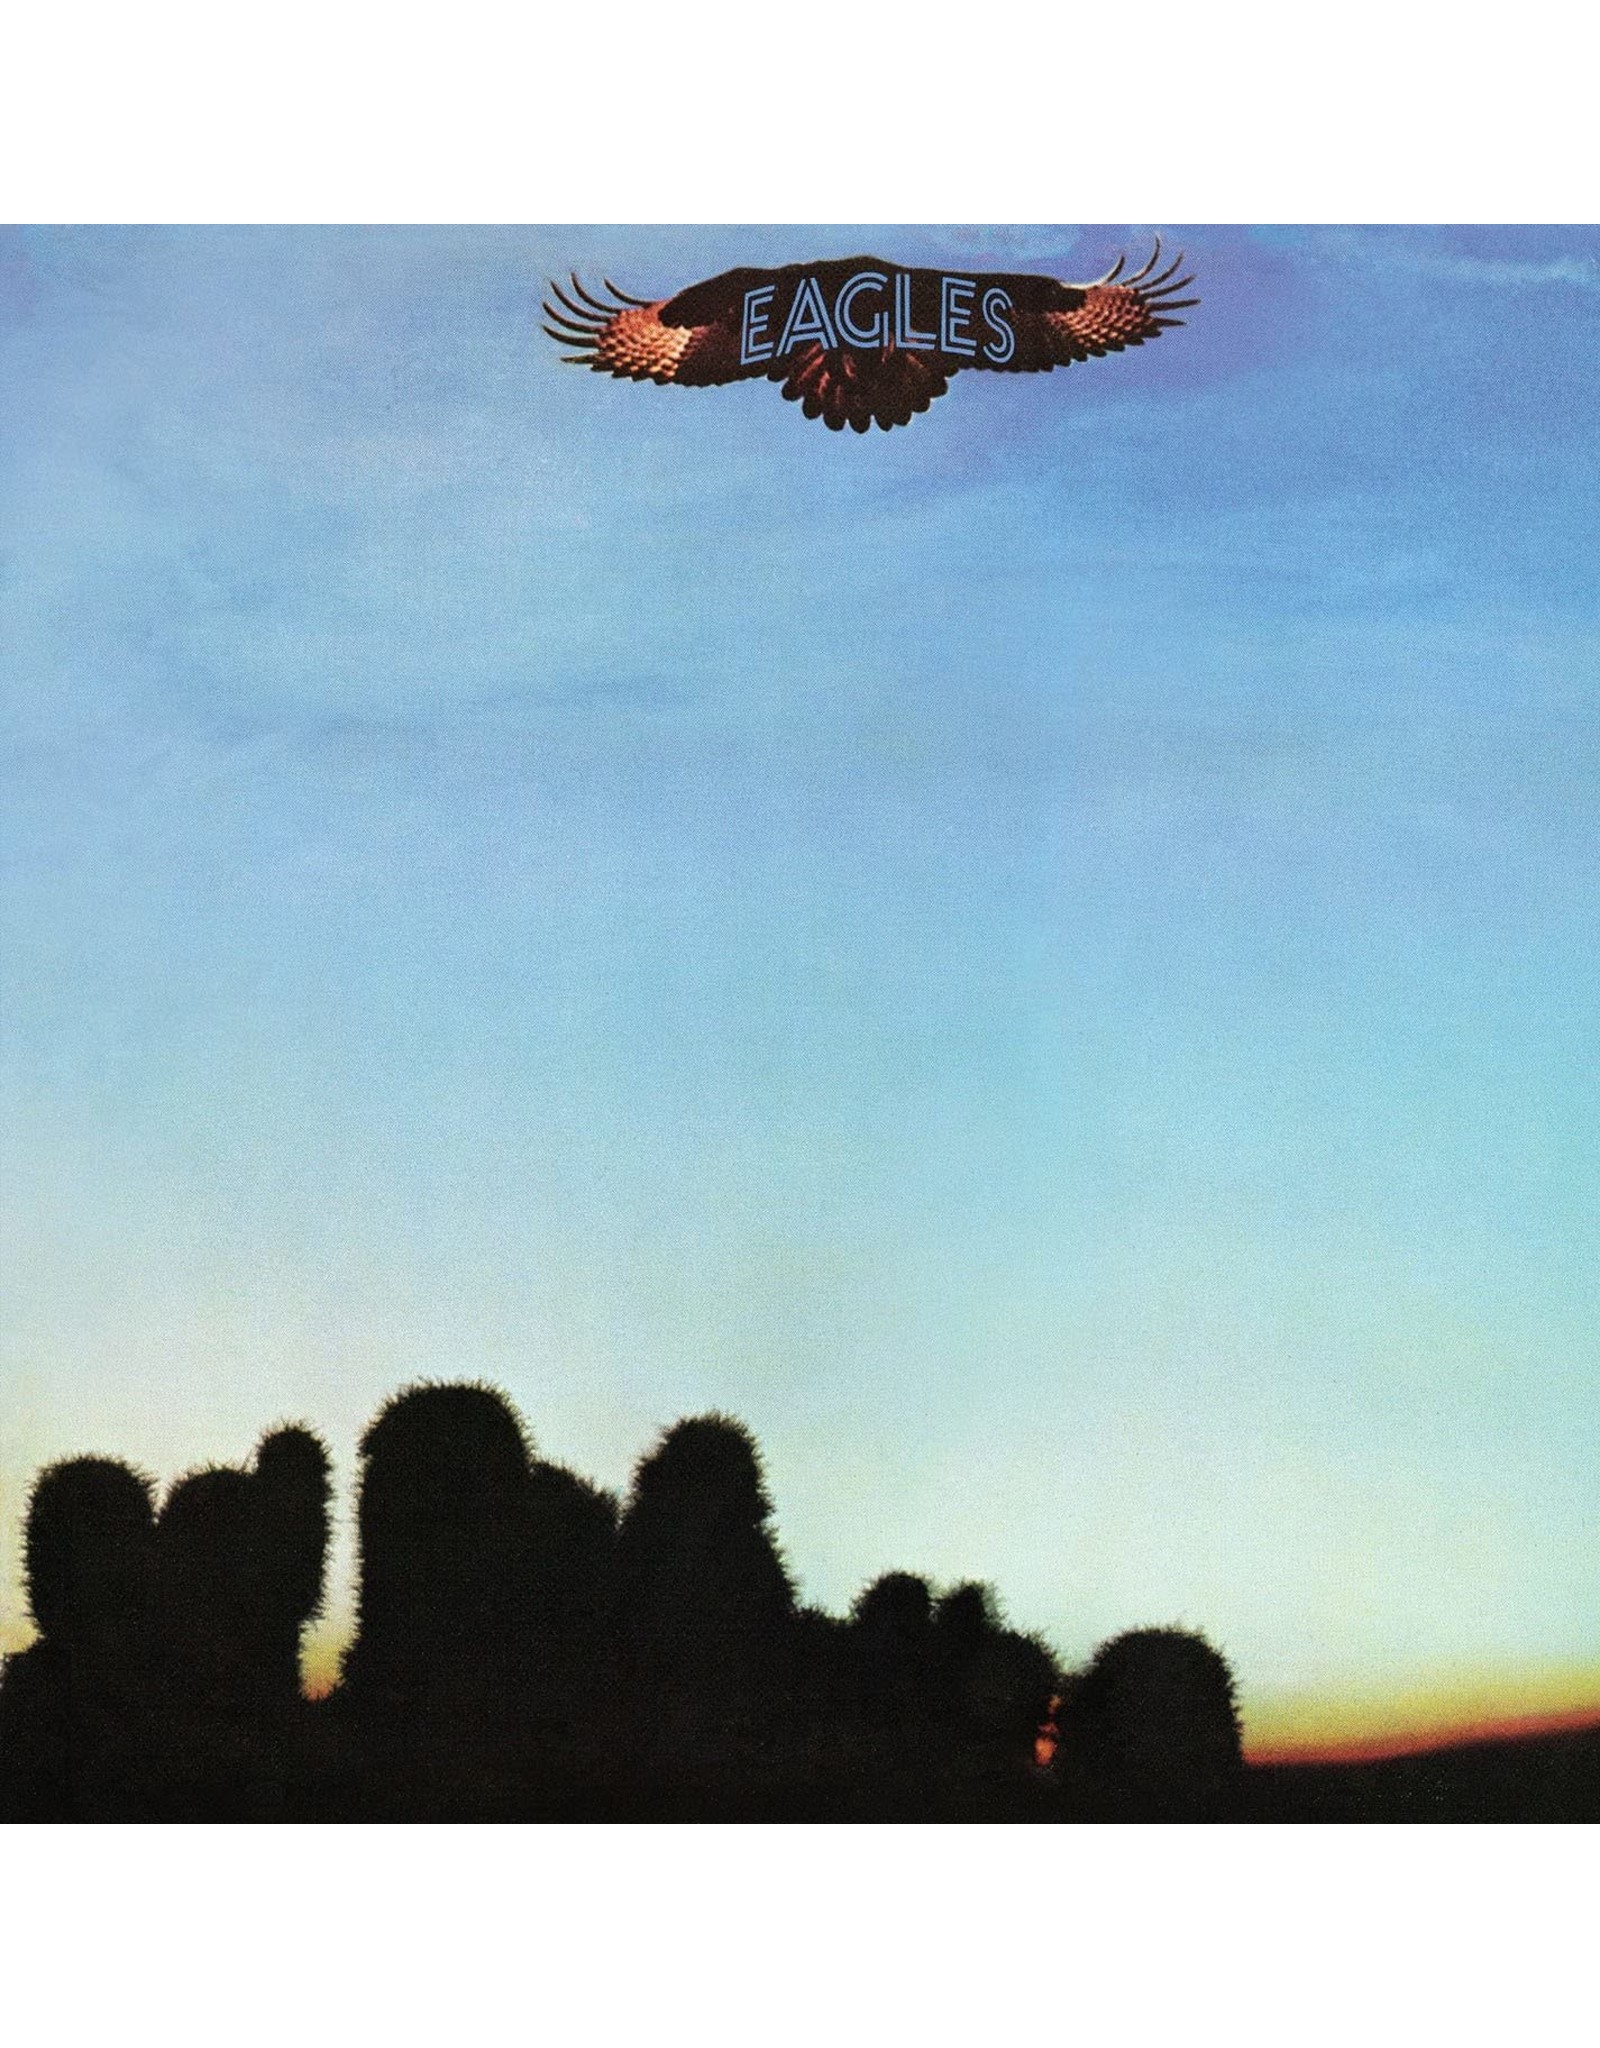 Eagles - Eagles (2014 Remaster)